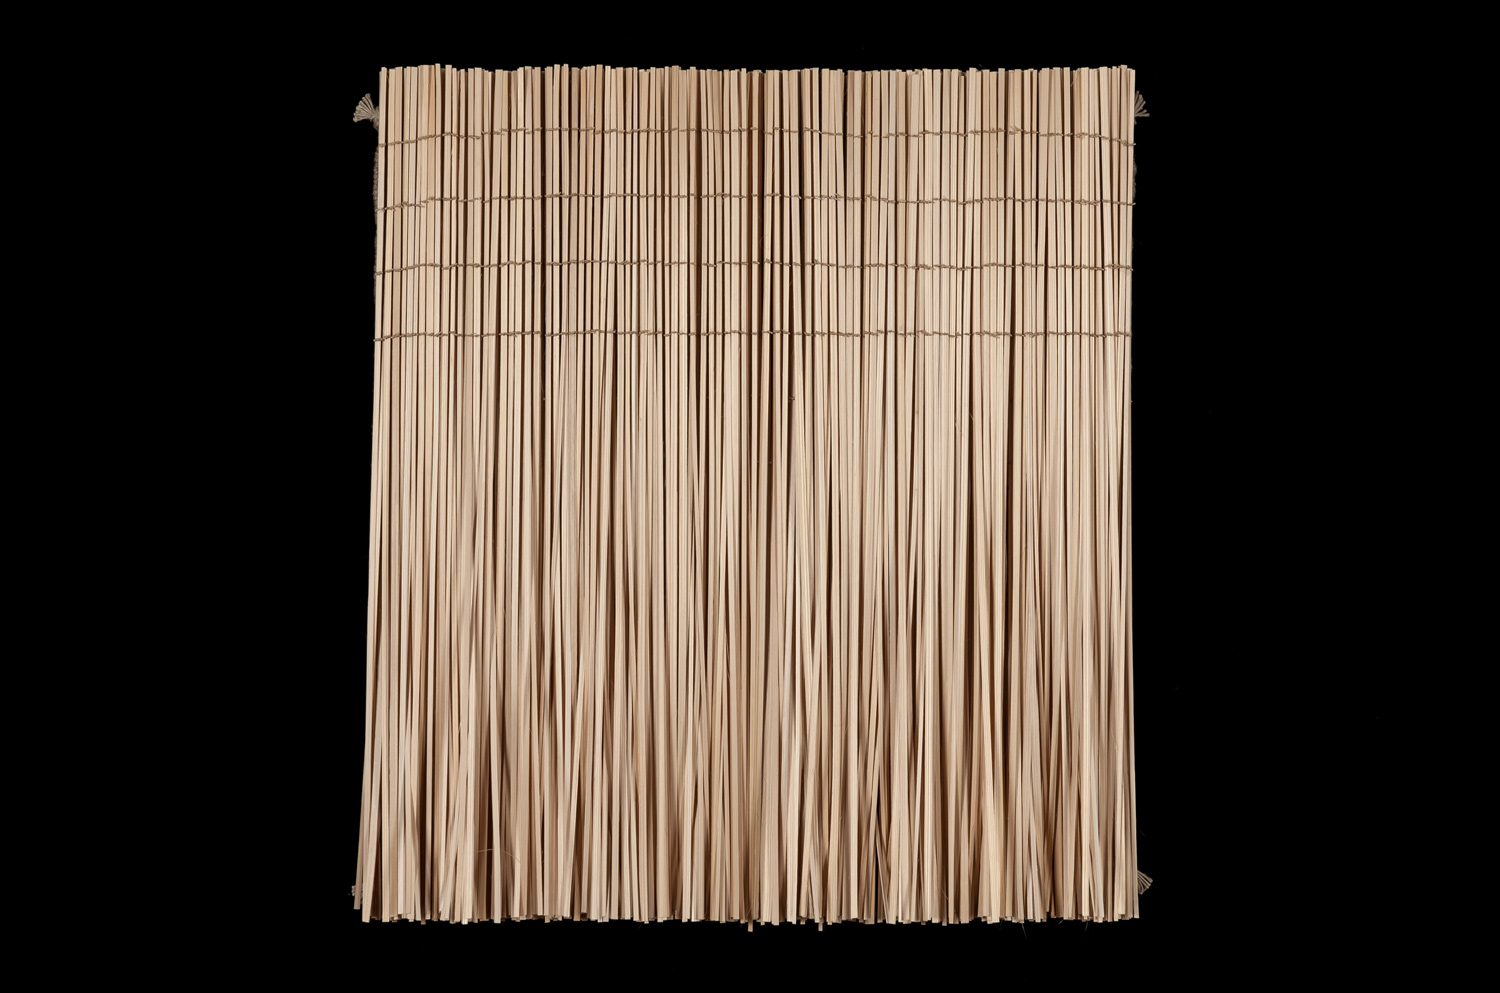 Falls / 20"x18"x3" / woven, knotted / bamboo, linen, hemp / 2016